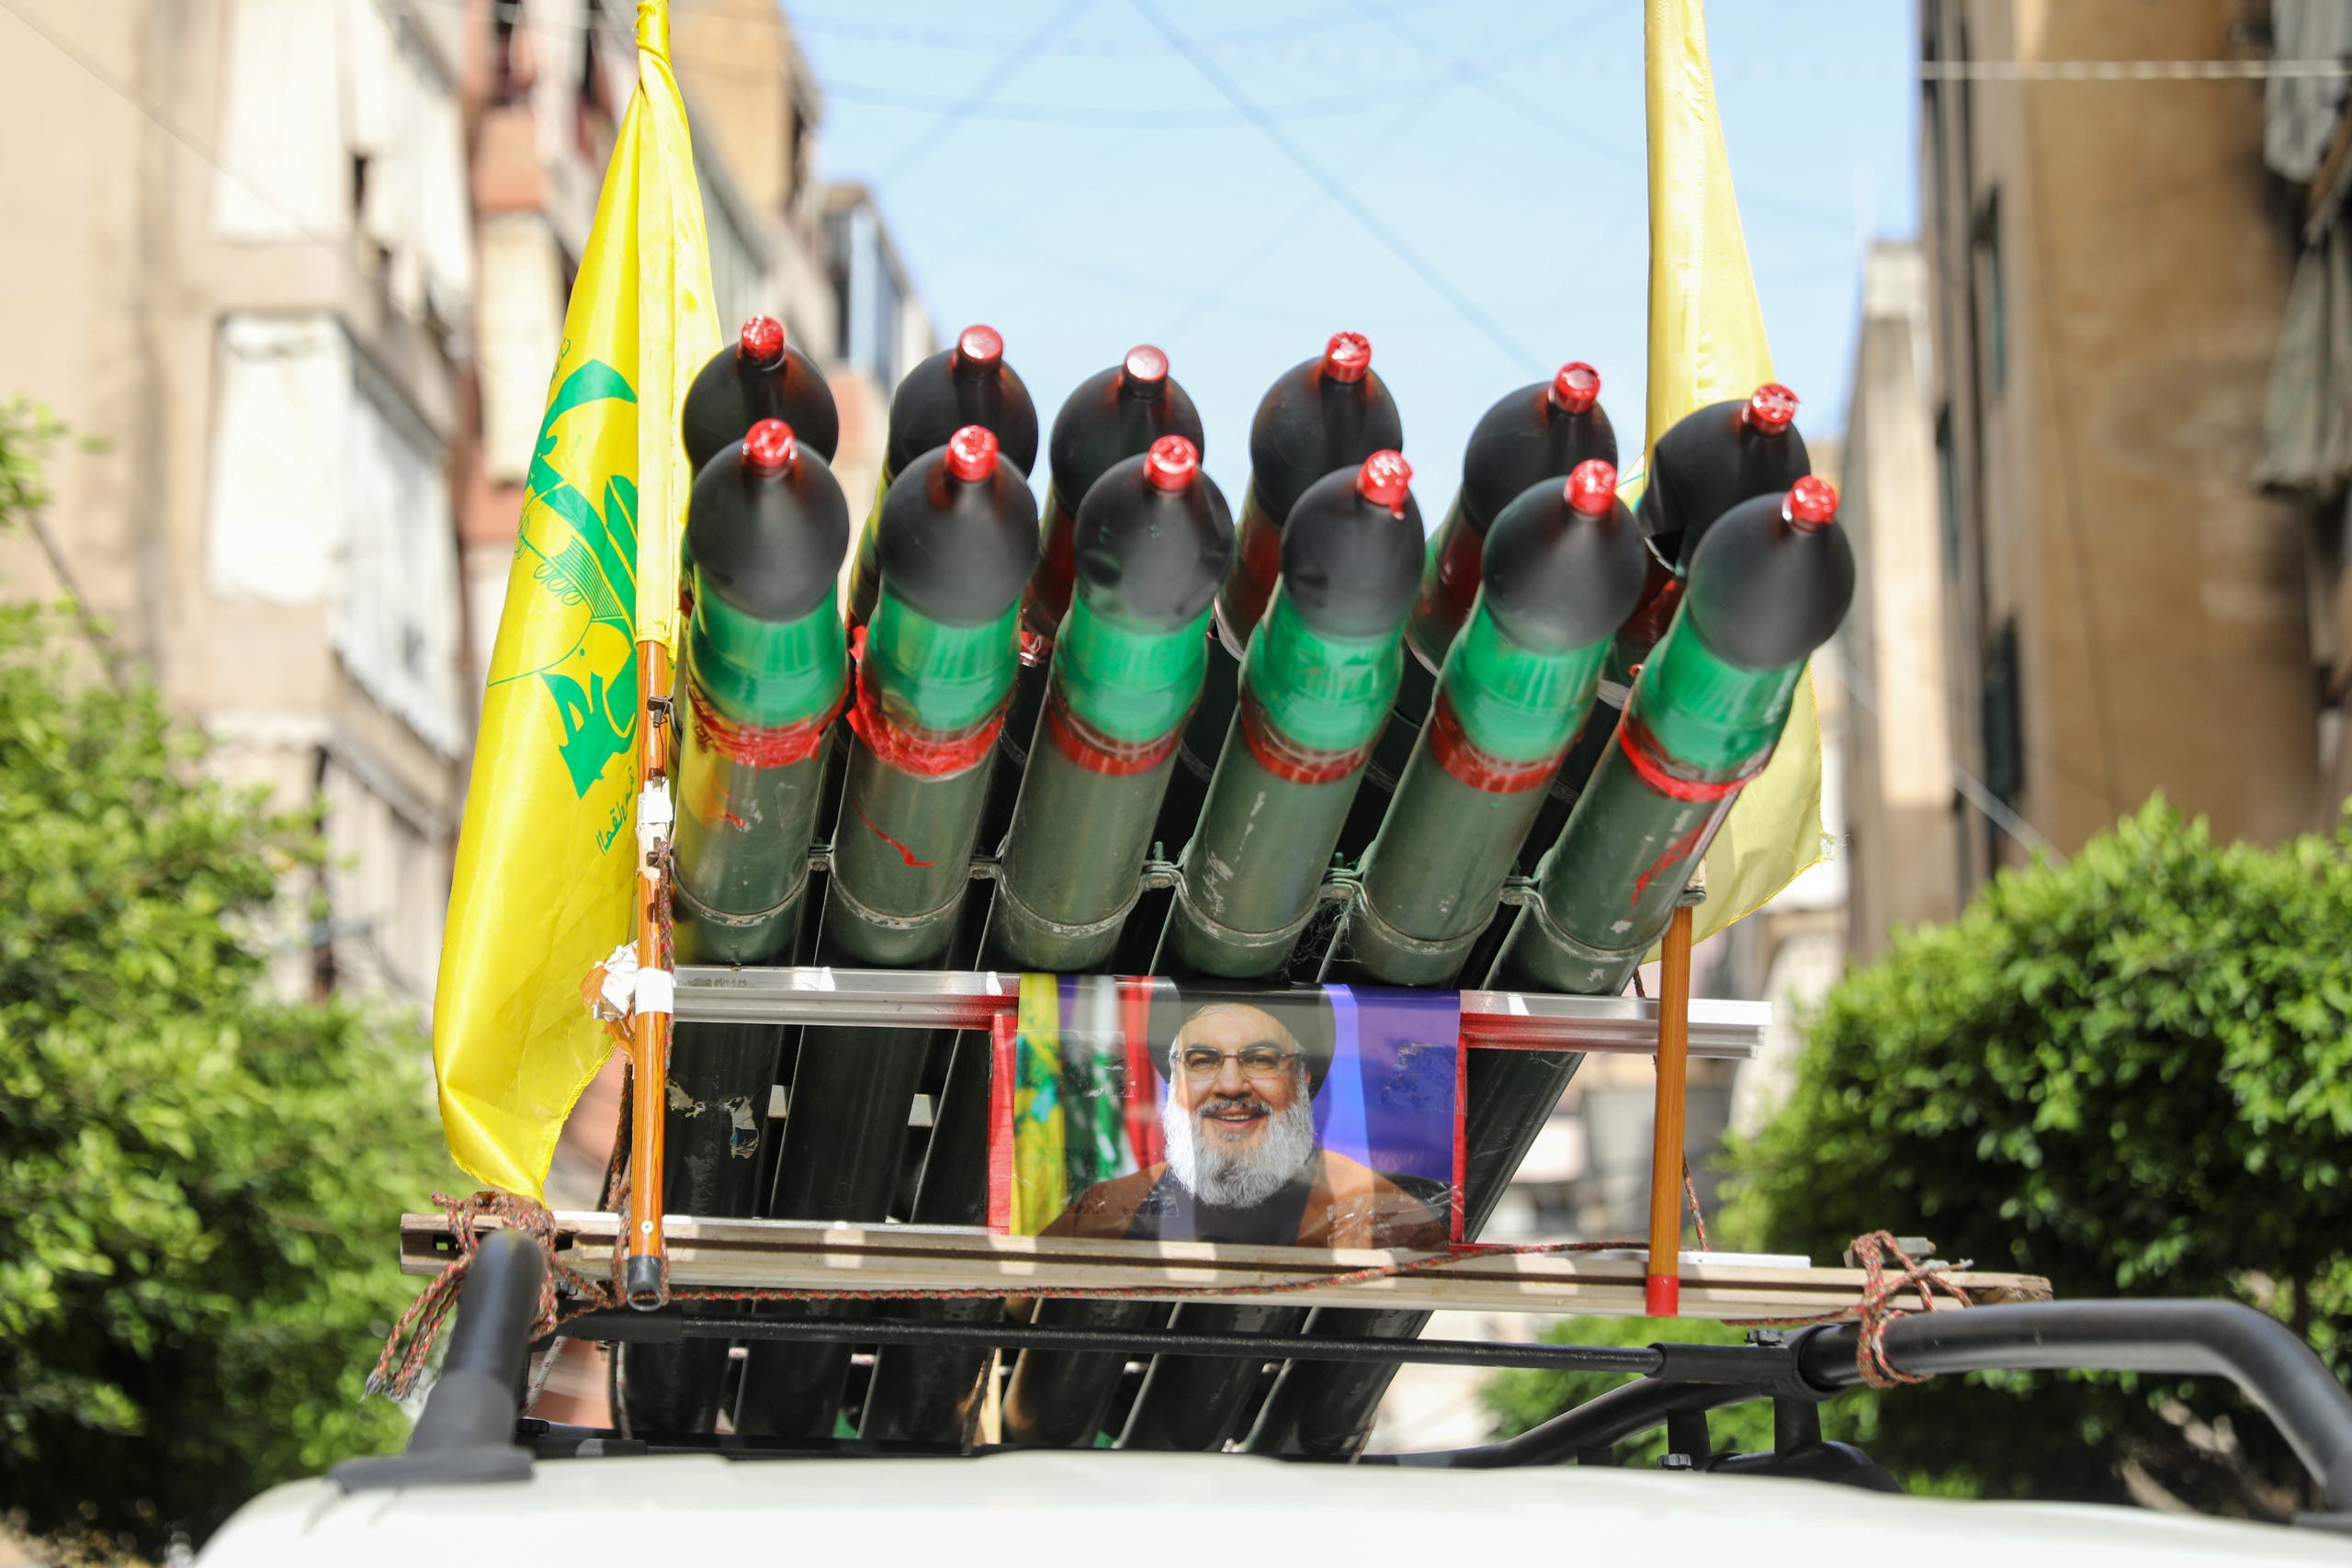 من مؤيدي حزب الله يتجول بمنصة صواريخ وهمية في بيروت